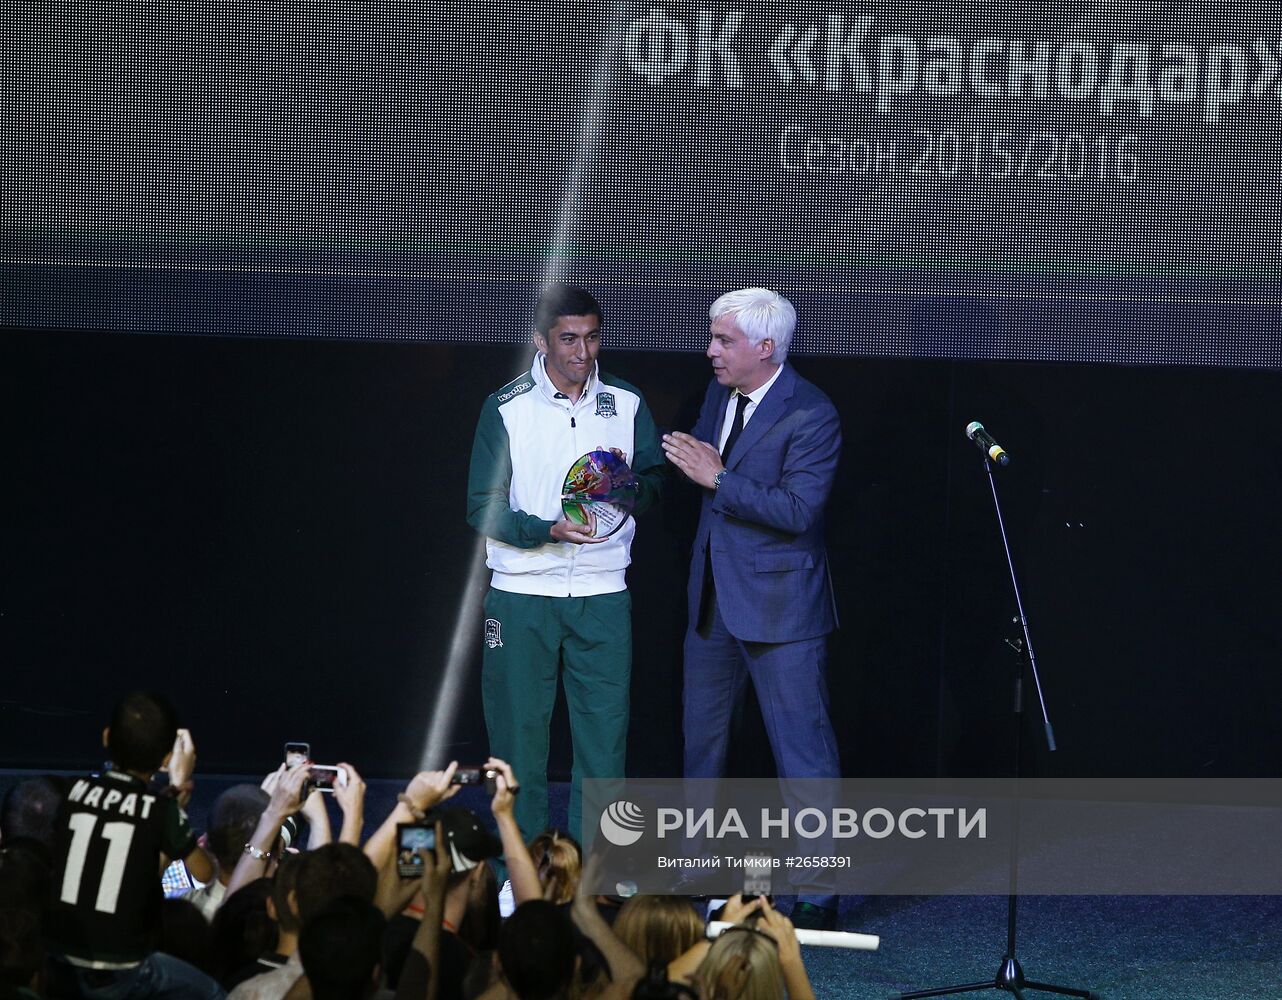 Церемония награждения ФК "Краснодар" бронзовыми медалями РФПЛ